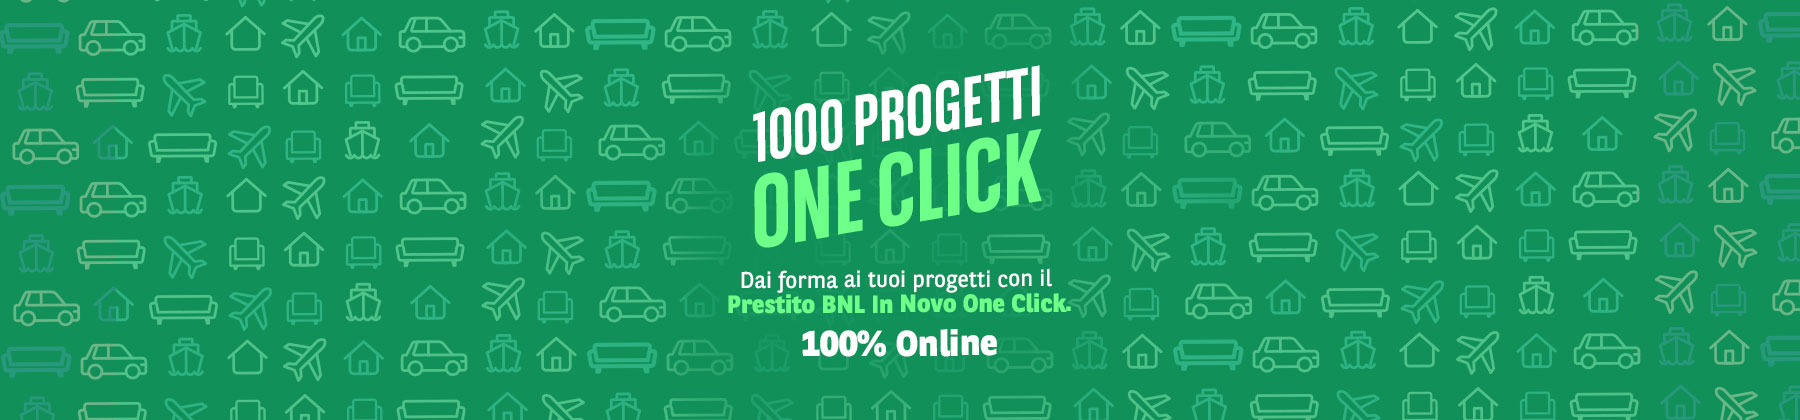 1000 progetti one click, riservato solo ai clienti. dai forma ai tuoi progetti con il prestito bnl in novo one click. 100% online